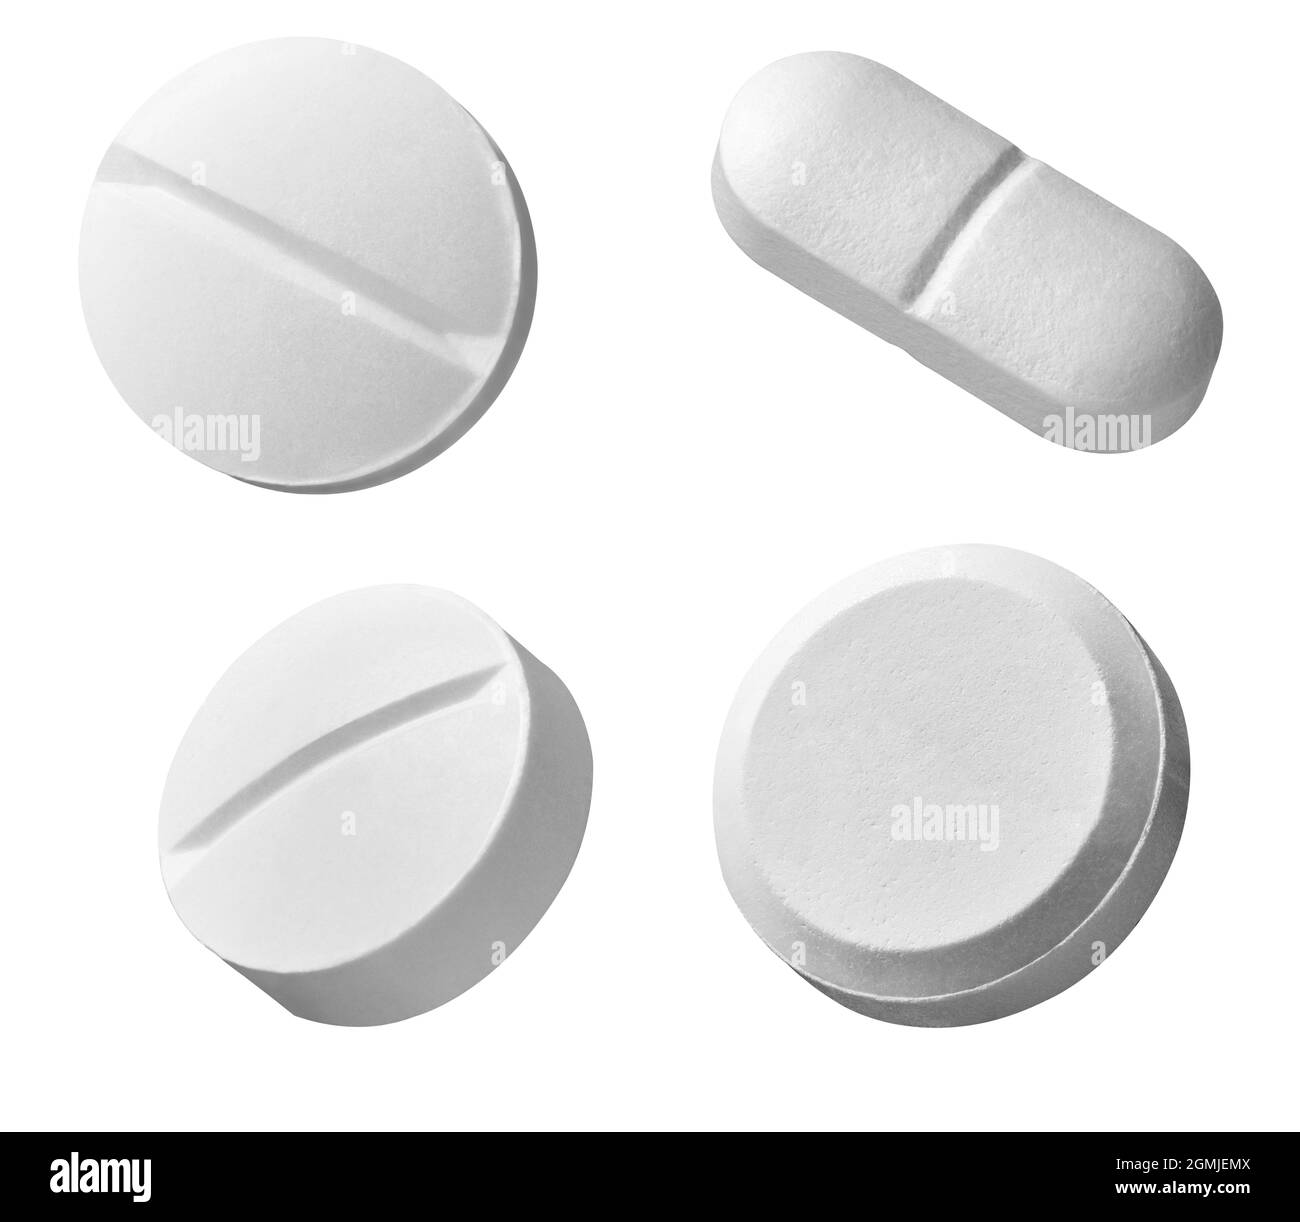 white pill medical drug medication Stock Photo